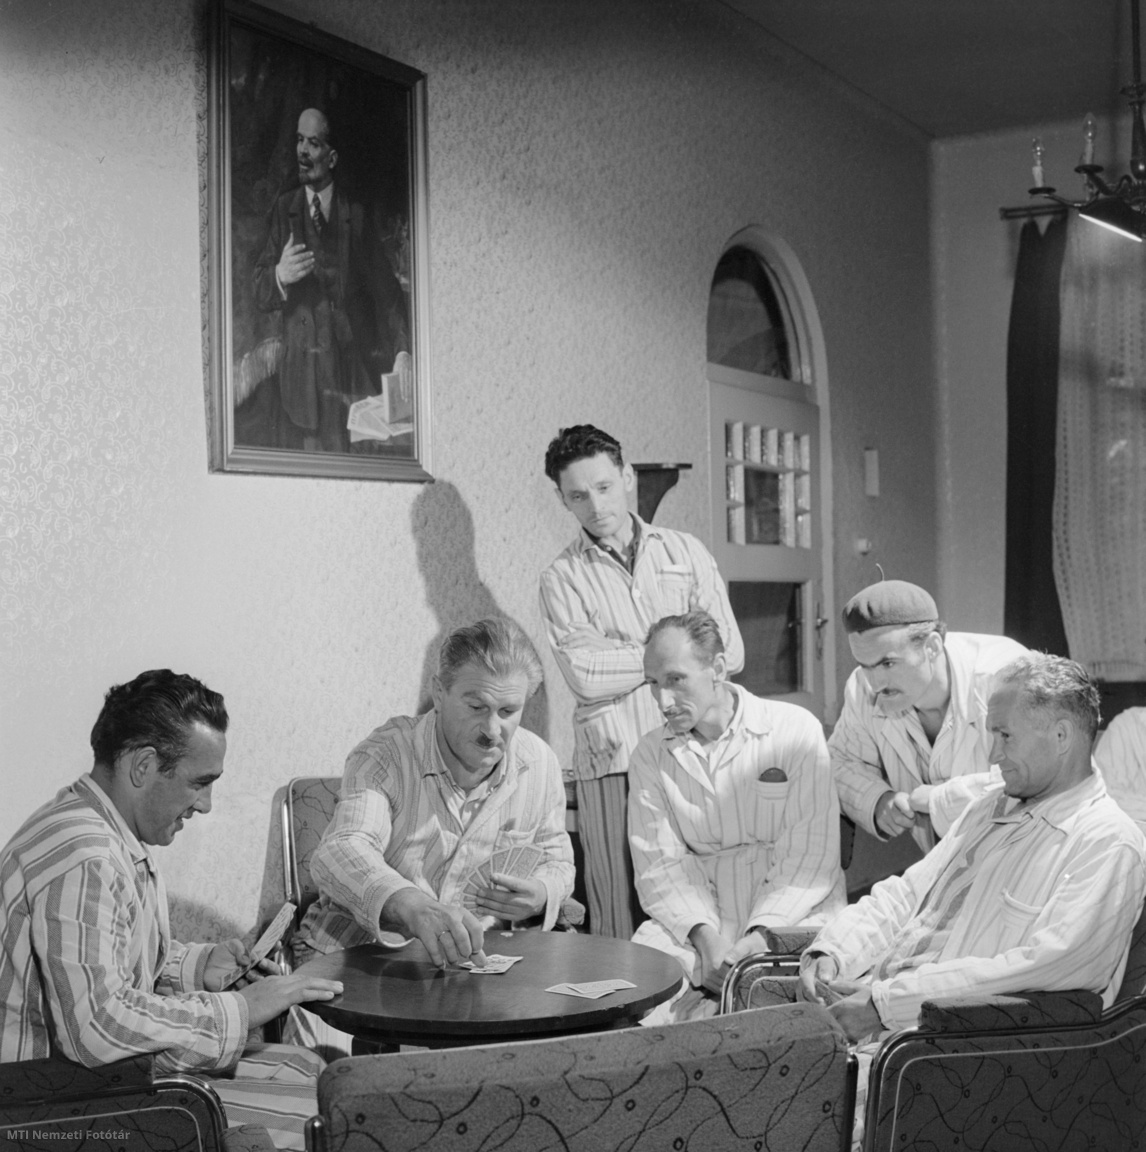 Sikonda, 1962. június 4. Kártyáznak a társalgóban az éjjeli szanatóriumba beutalt bányászok. Lassan tíz éve, hogy a pécsi és komlói bányászok részére megnyitották a sikondai éjjeli szanatóriumot, ahol munkaidejük után a panaszoknak megfelelő gyógykezelést kapnak, illetve eltölthetik szabadidejüket. A szanatóriumban két orvos, öt ápolónő és két fürdőmester segíti elő az elsősorban mozgásszervi megbetegedéssel négyhetes kezelésre beutalt bányászokat.